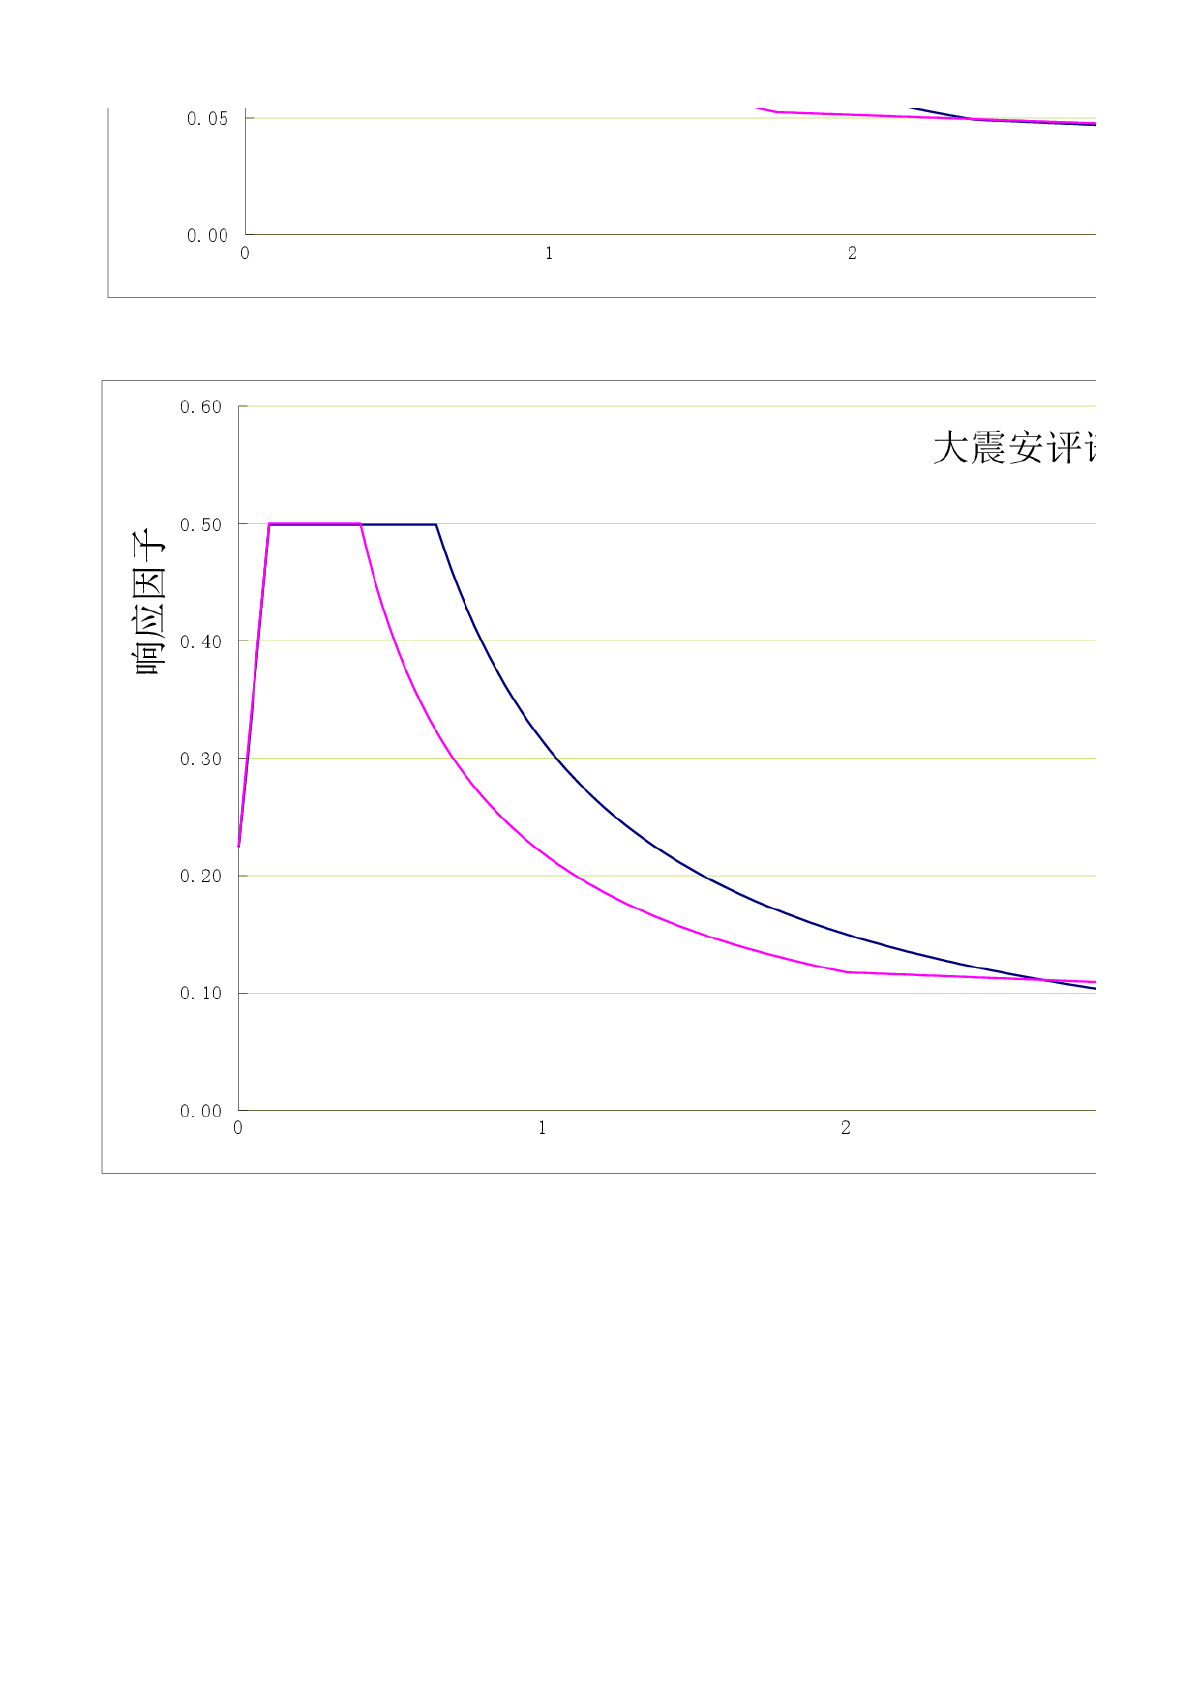 超限工程安评谱和规范谱地震影响系数曲线对比-图二